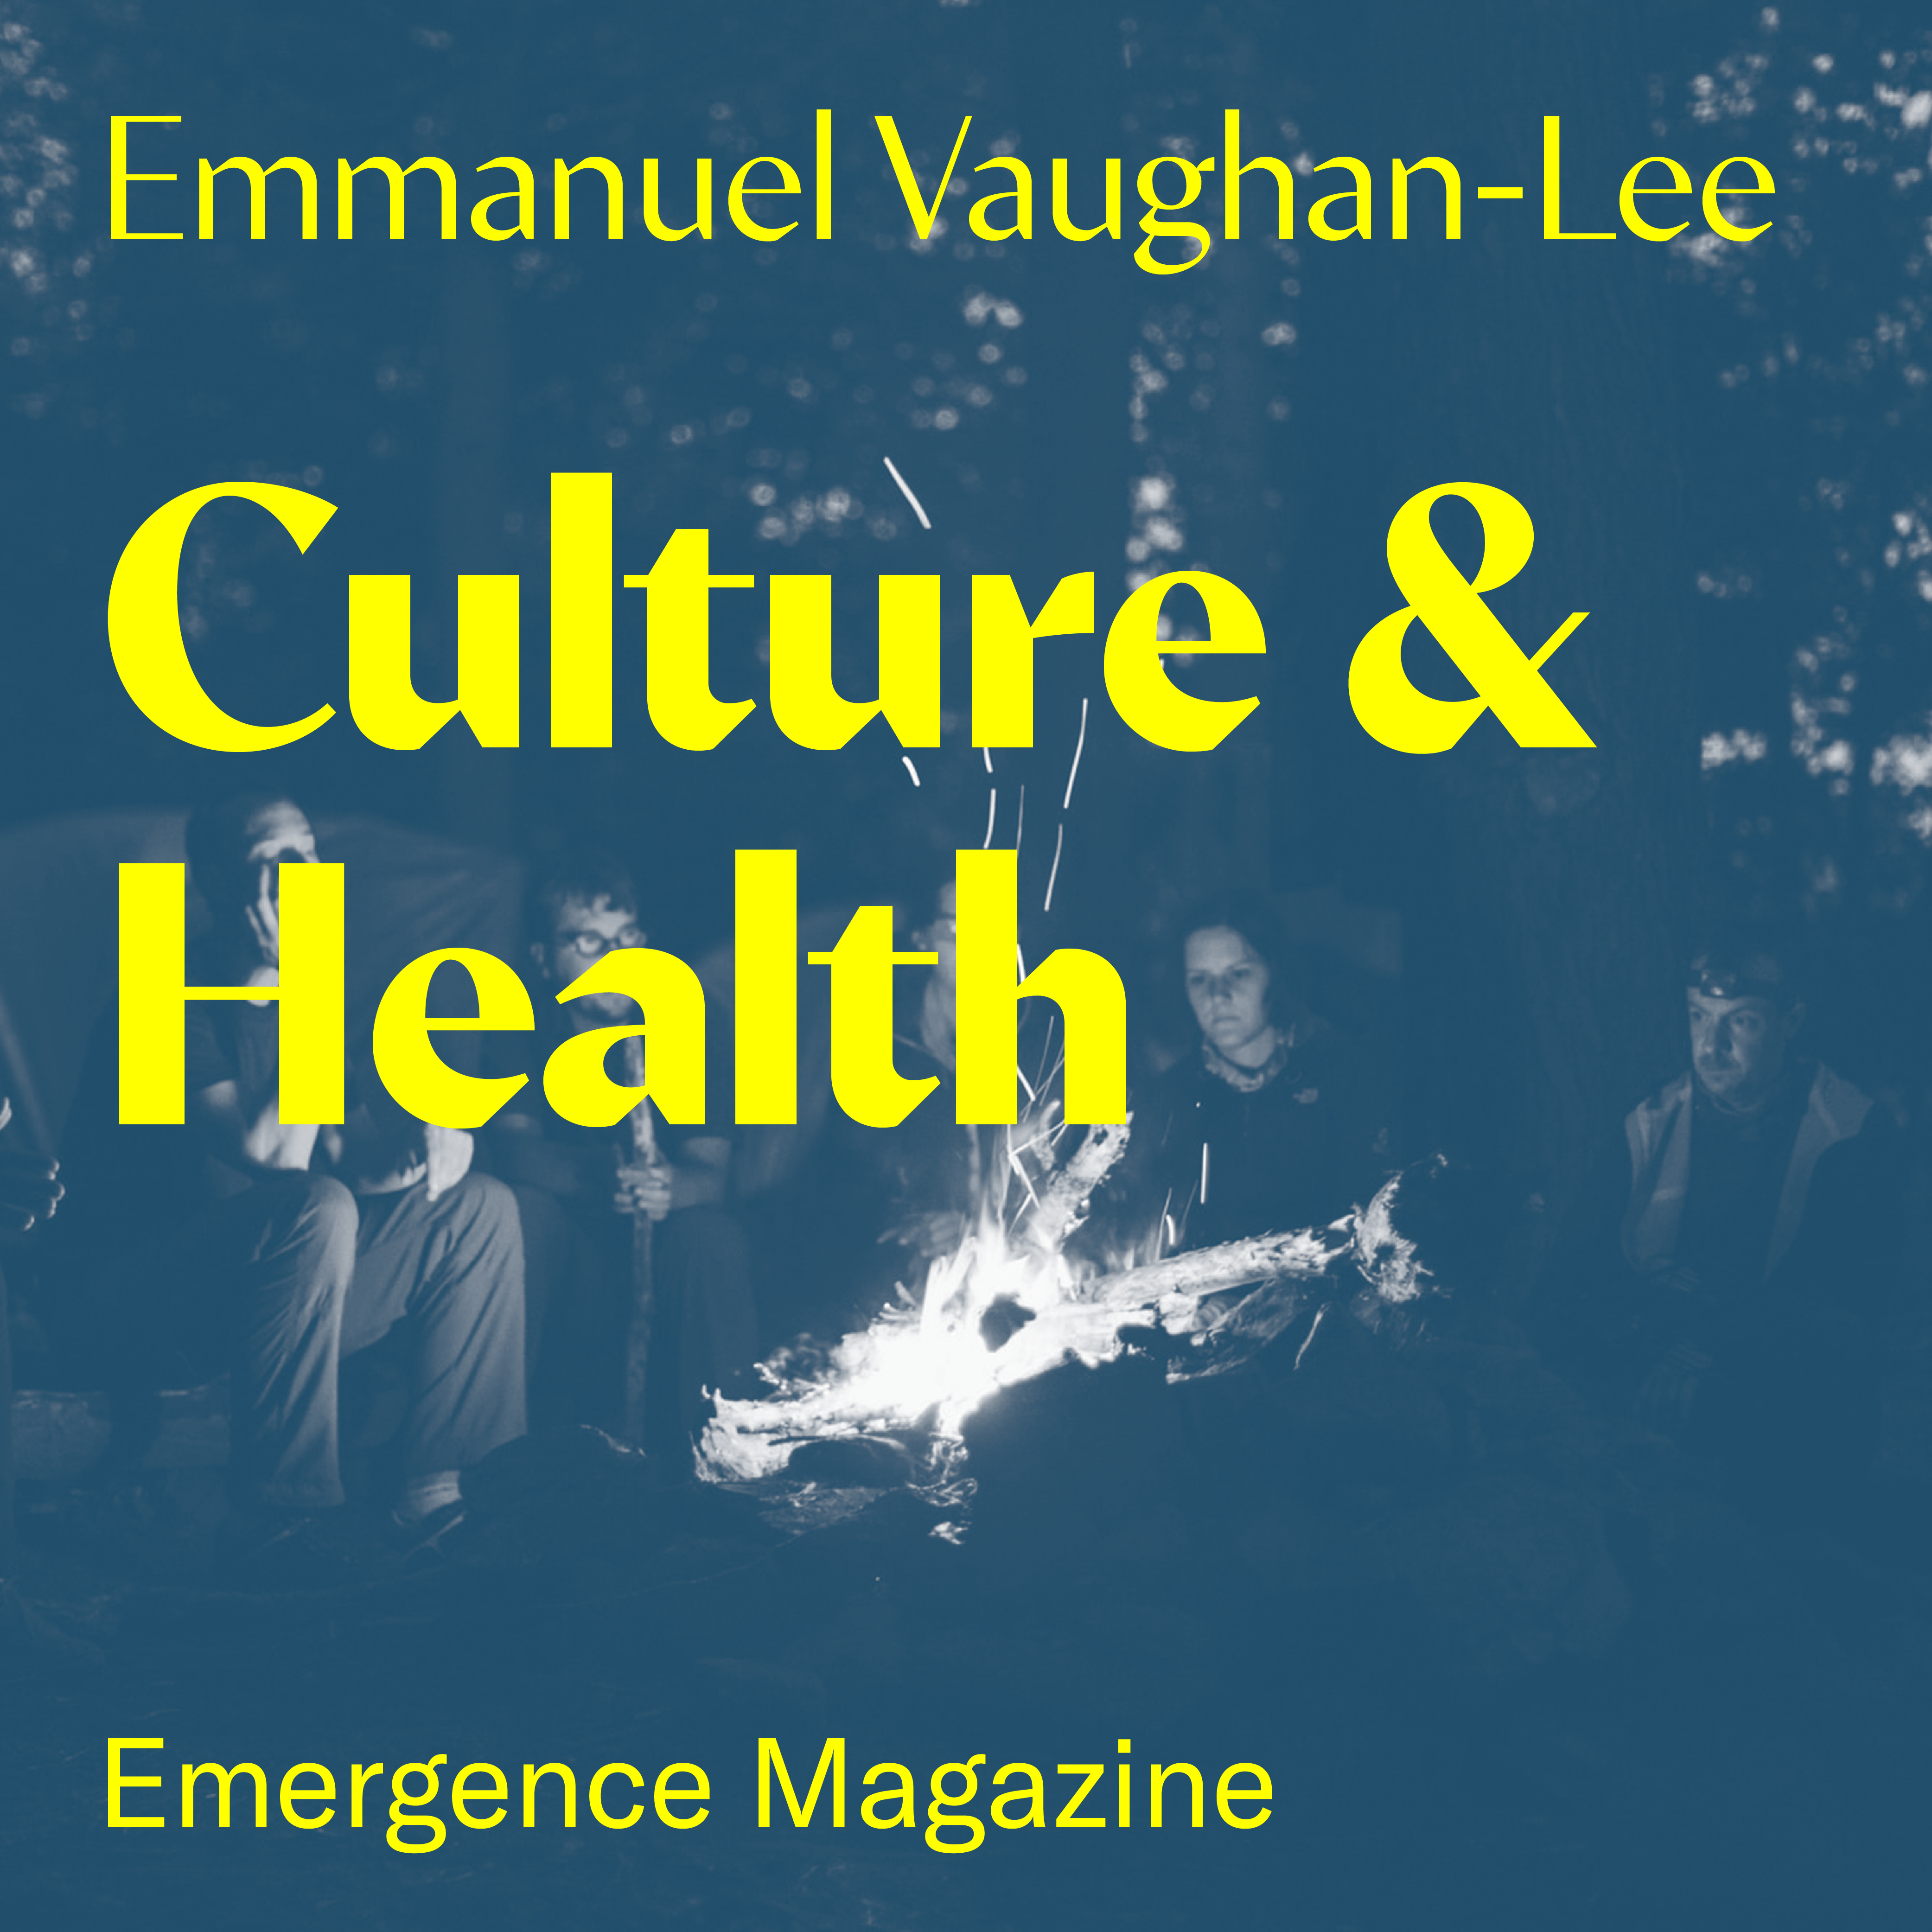 Emmanuel Vaughan-Lee